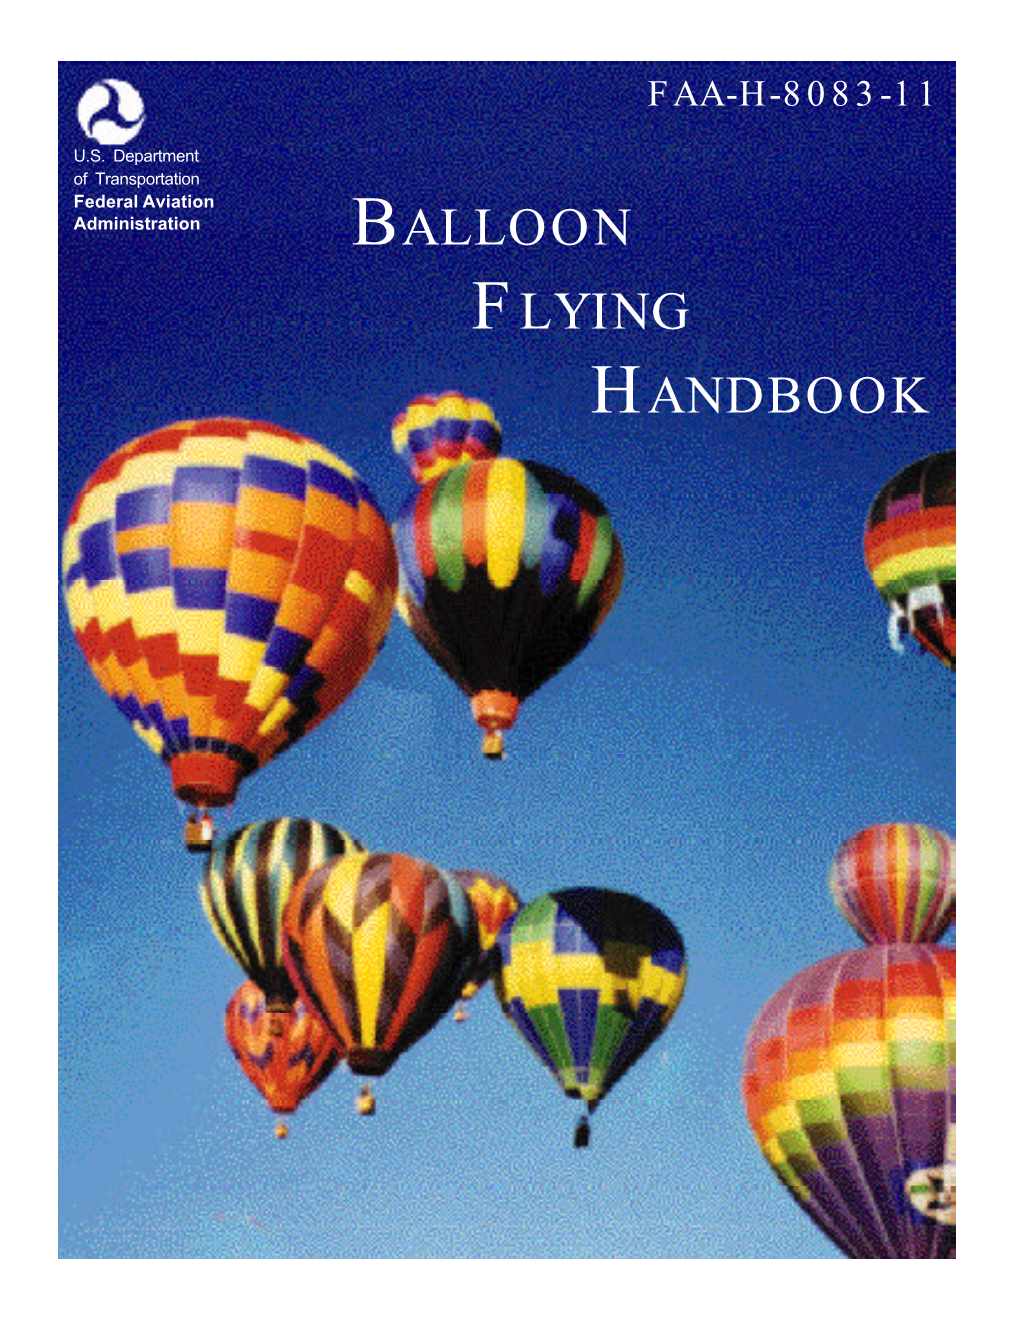 FAA-H-8083-11, Balloon Flying Handbook